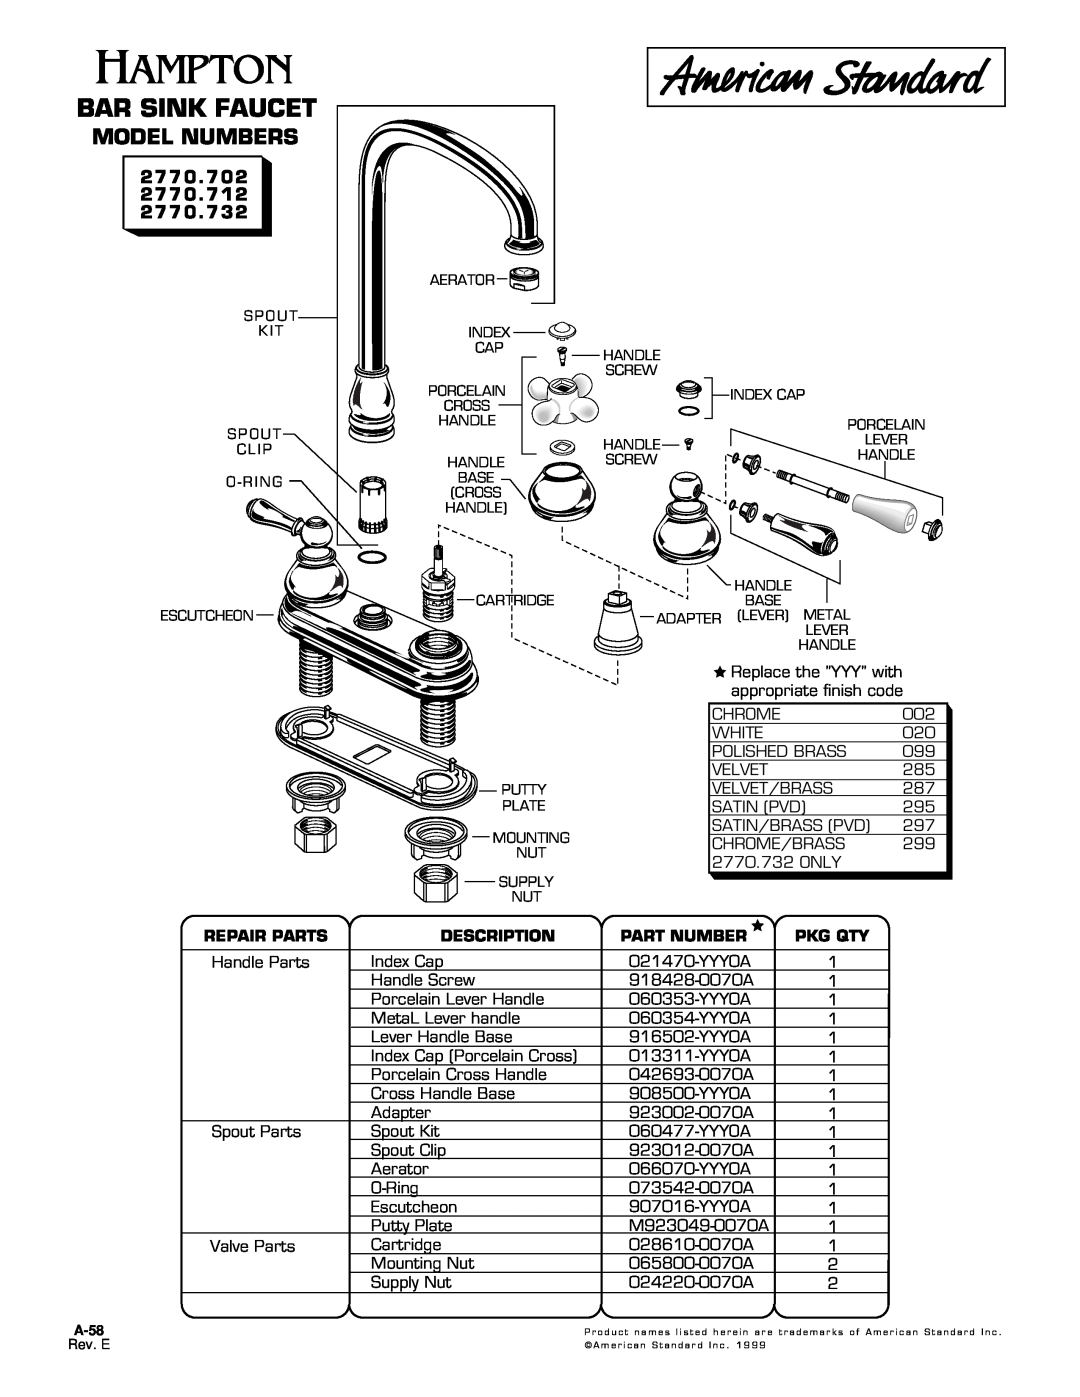 American Standard 2770.732 manual Bar Sink Faucet, Model Numbers, 2770.702, Repair Parts, Description, Part Number 